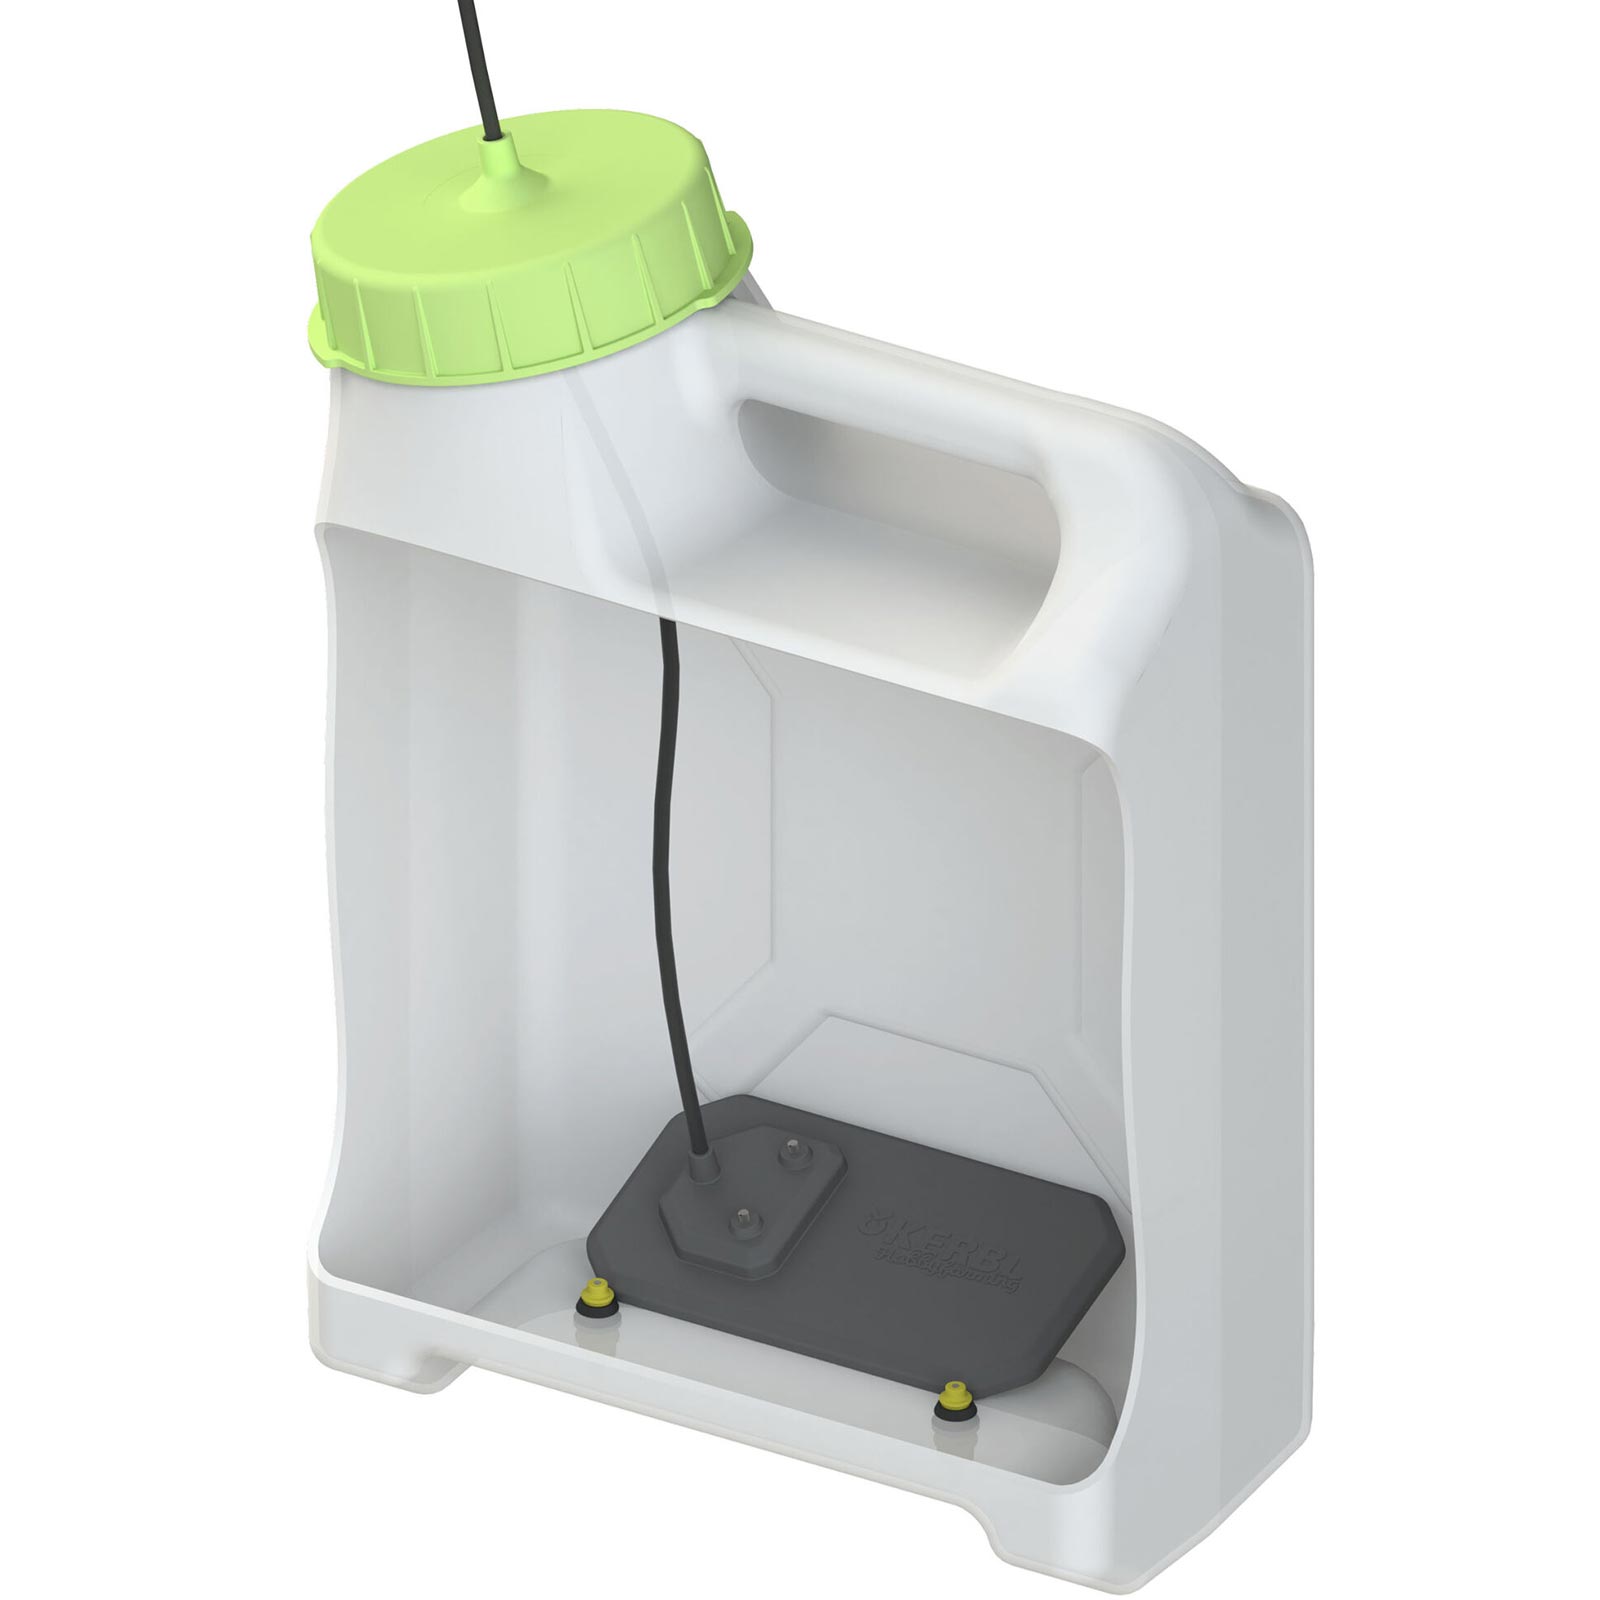 SmartCoop drinker heater with level sensor